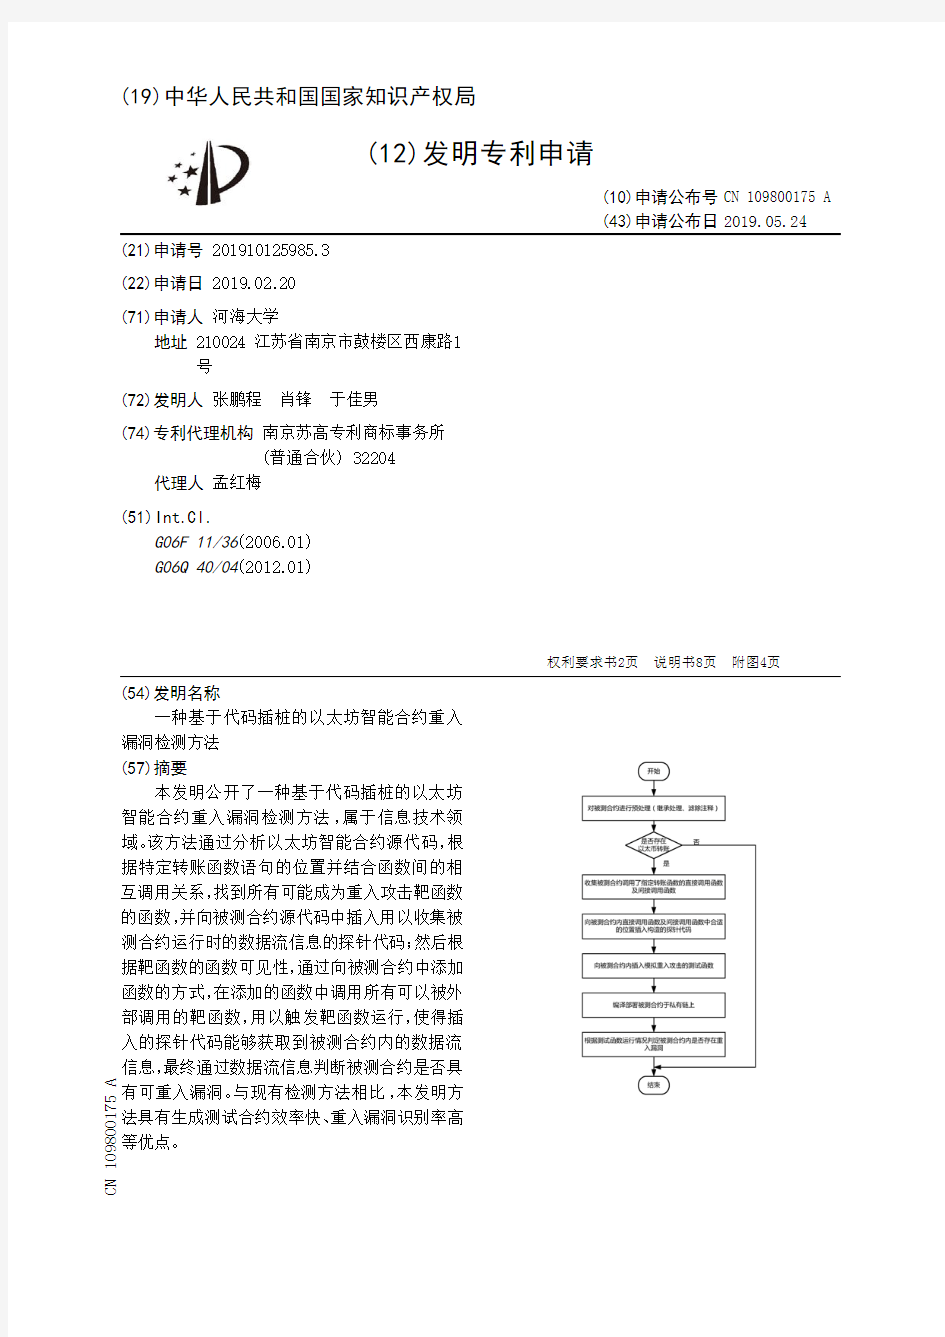 【CN109800175A】一种基于代码插桩的以太坊智能合约重入漏洞检测方法【专利】